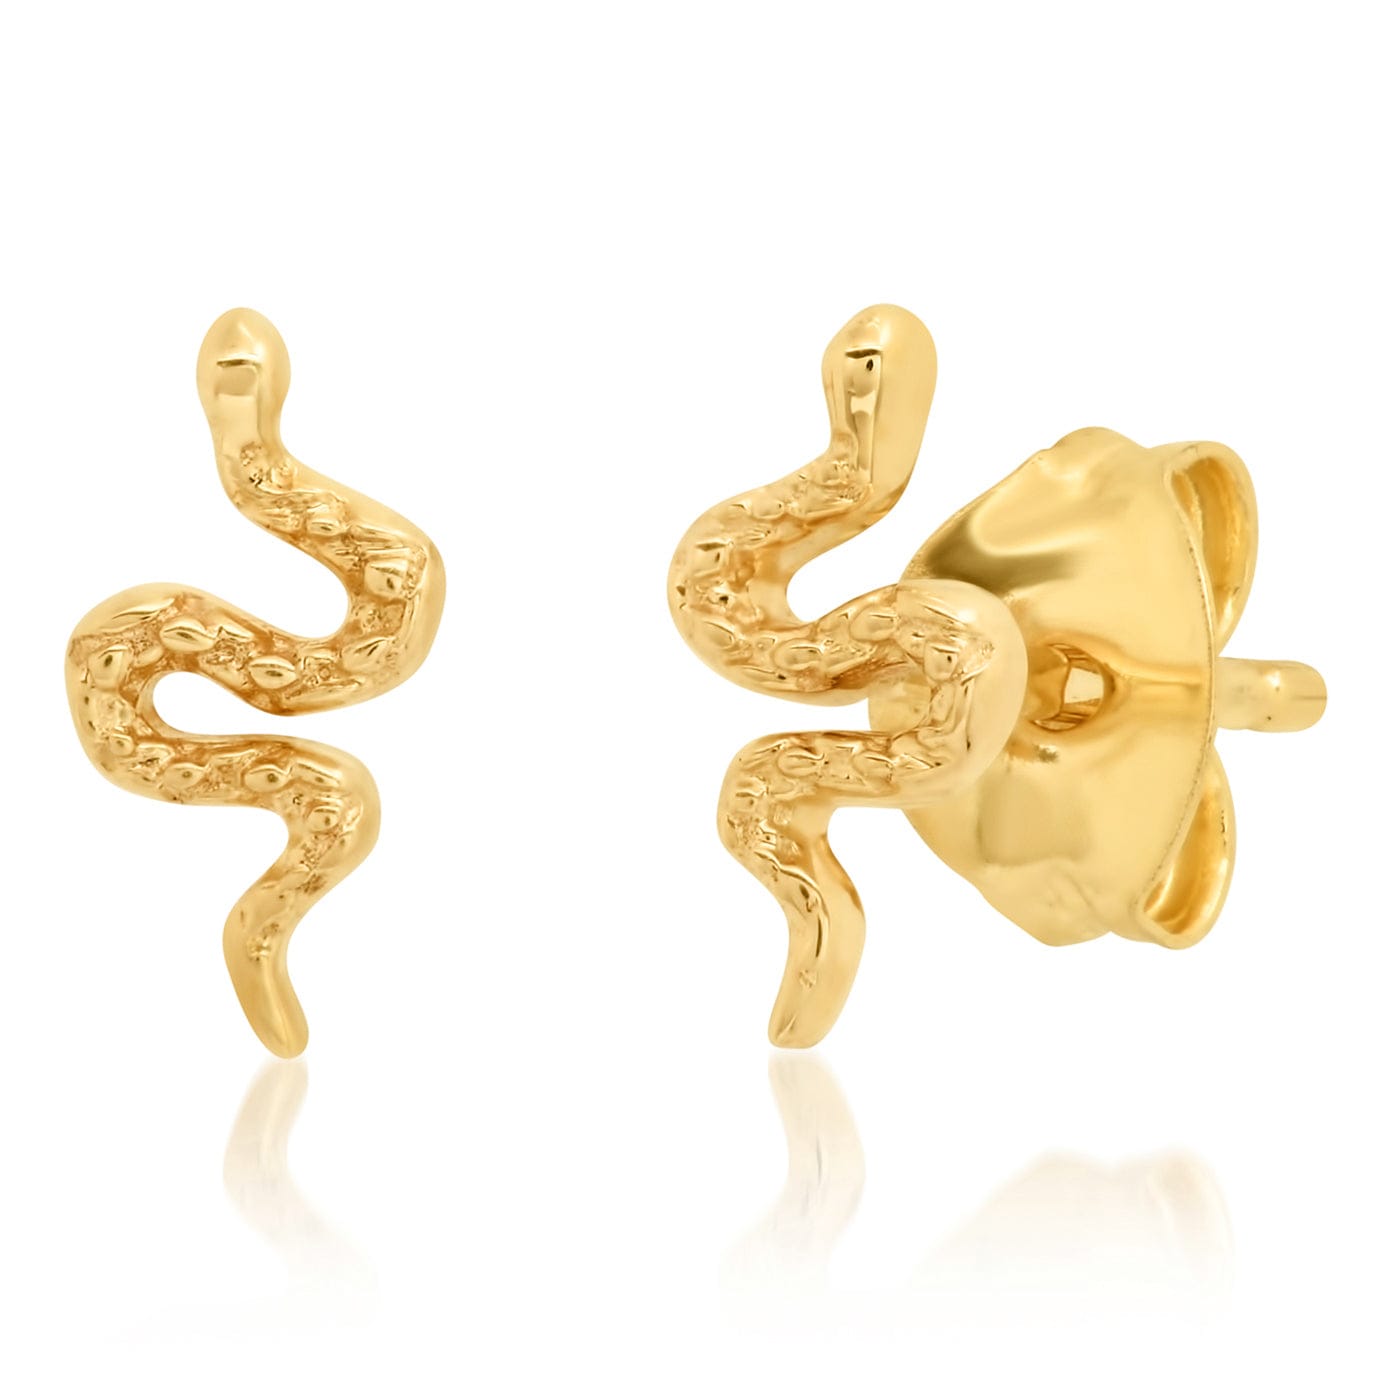 TAI JEWELRY Earrings 14k Gold 14k Serpentine Studs